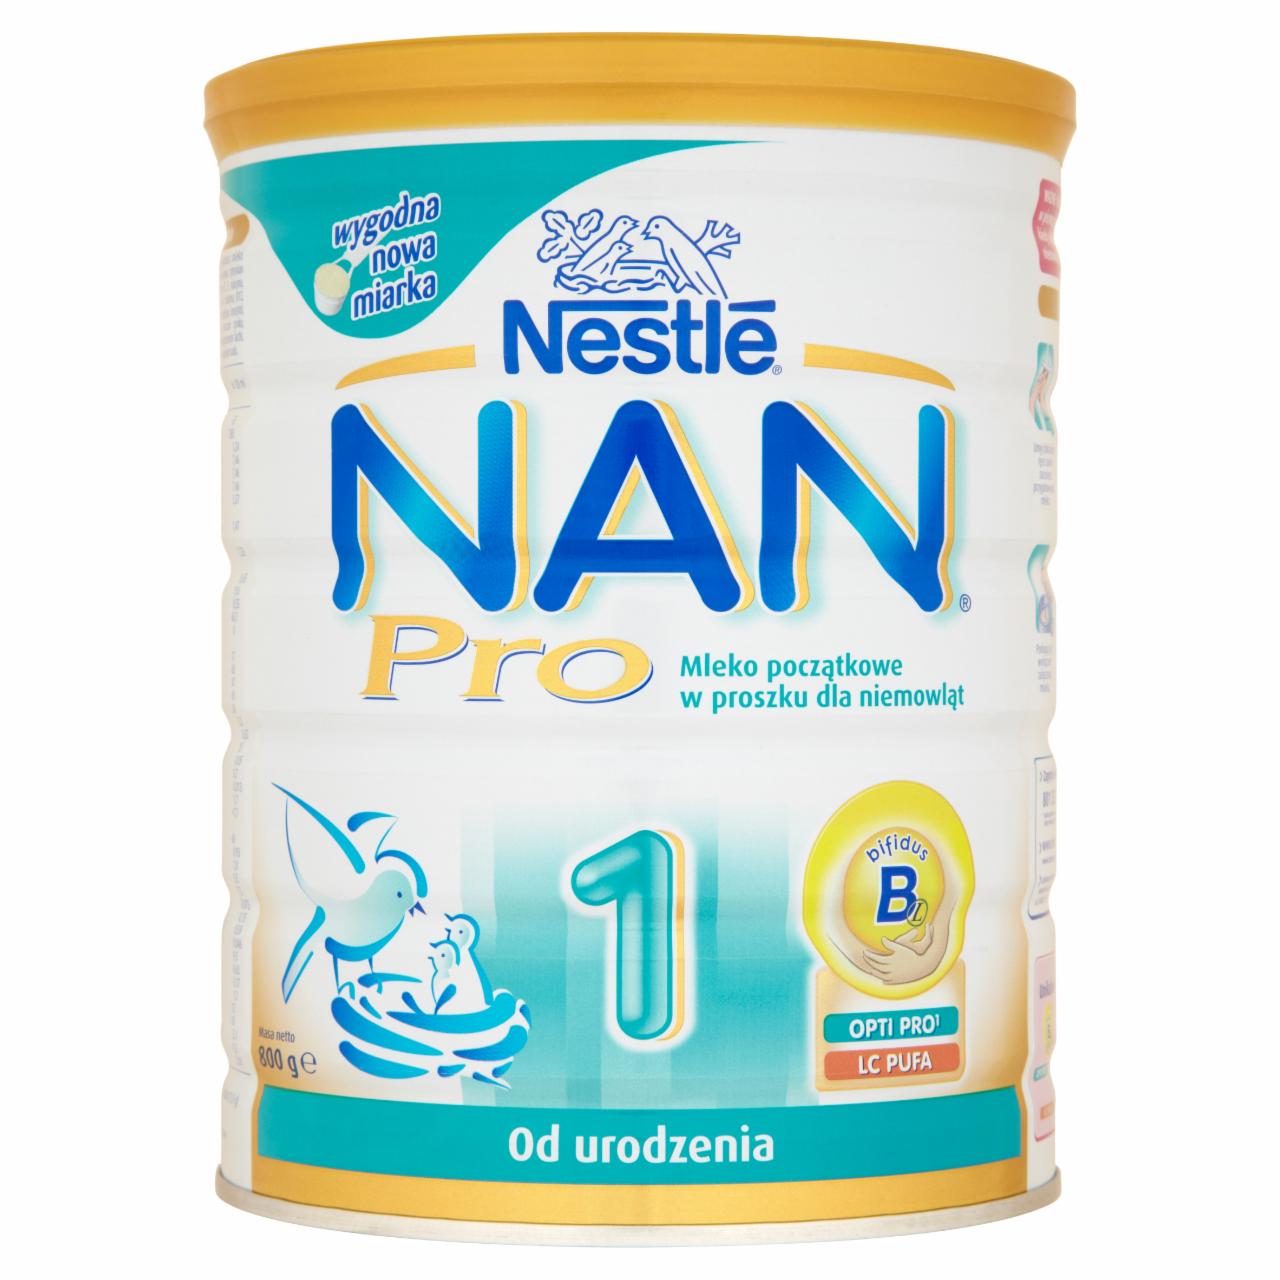 Zdjęcia - Nestlé Nan Pro 1 Mleko początkowe w proszku dla niemowląt od urodzenia 800 g